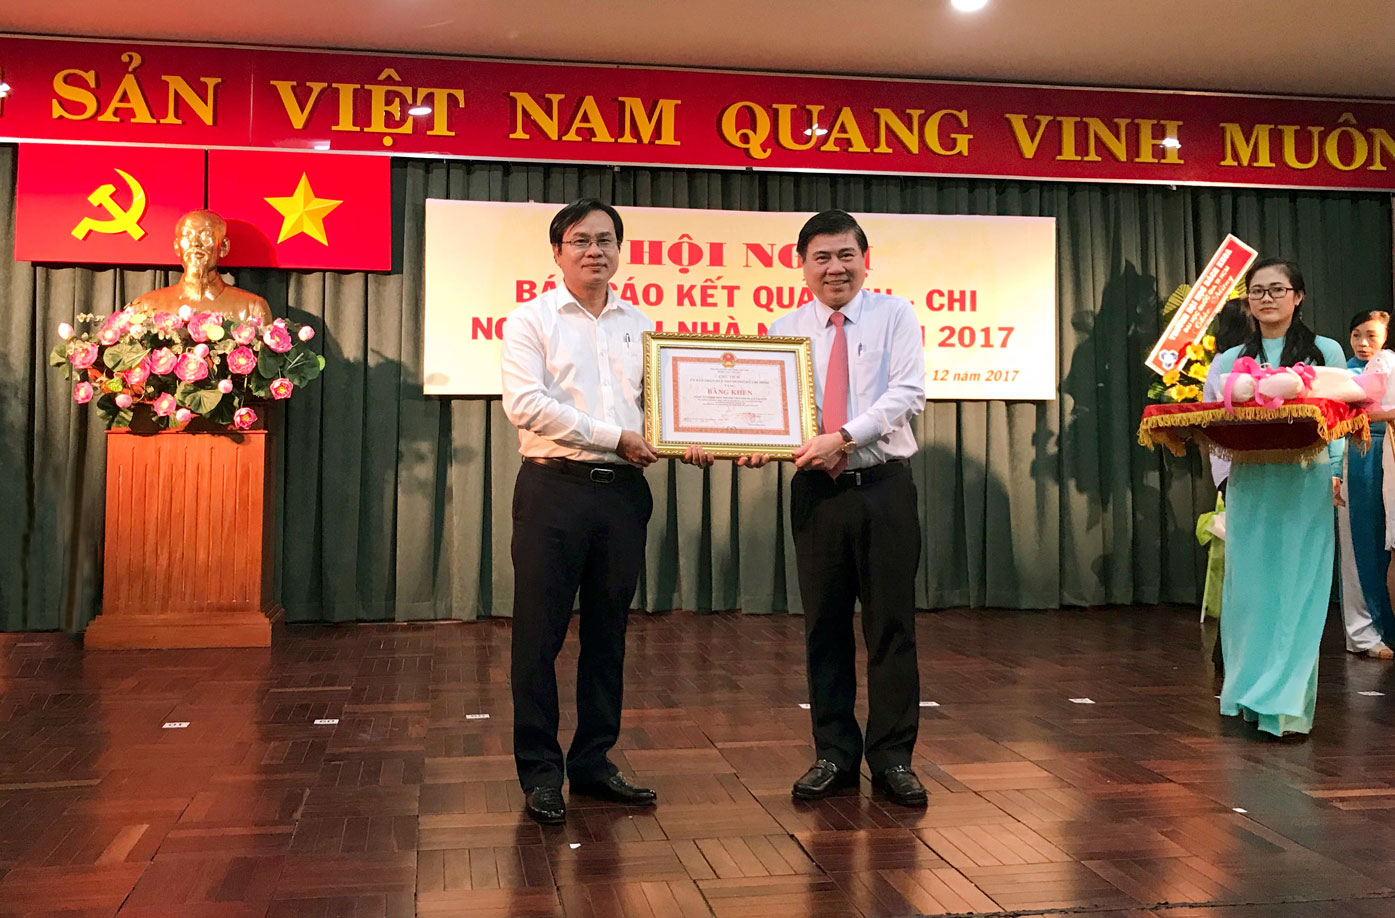 Ông Châu Tuấn – Giám đốc Công ty Thuốc lá Sài Gòn nhận bằng khen do Ông Nguyễn Thành Phong - Chủ tịch UBND TPHCM trao tặng